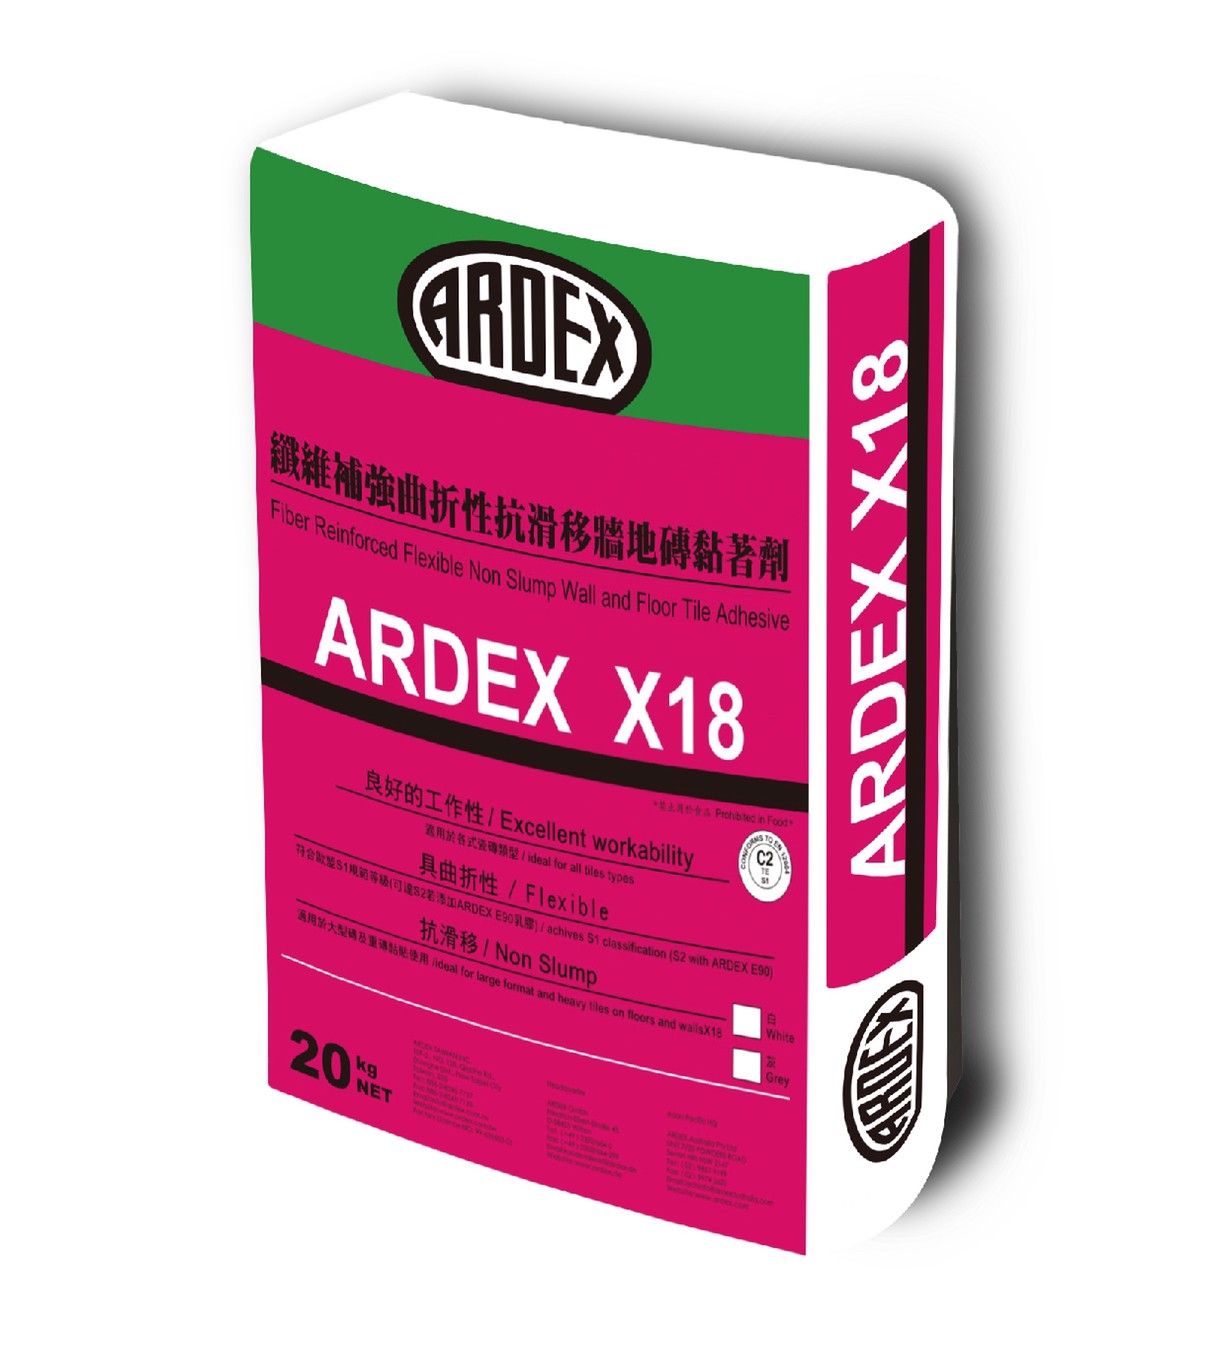 ARDEX X18